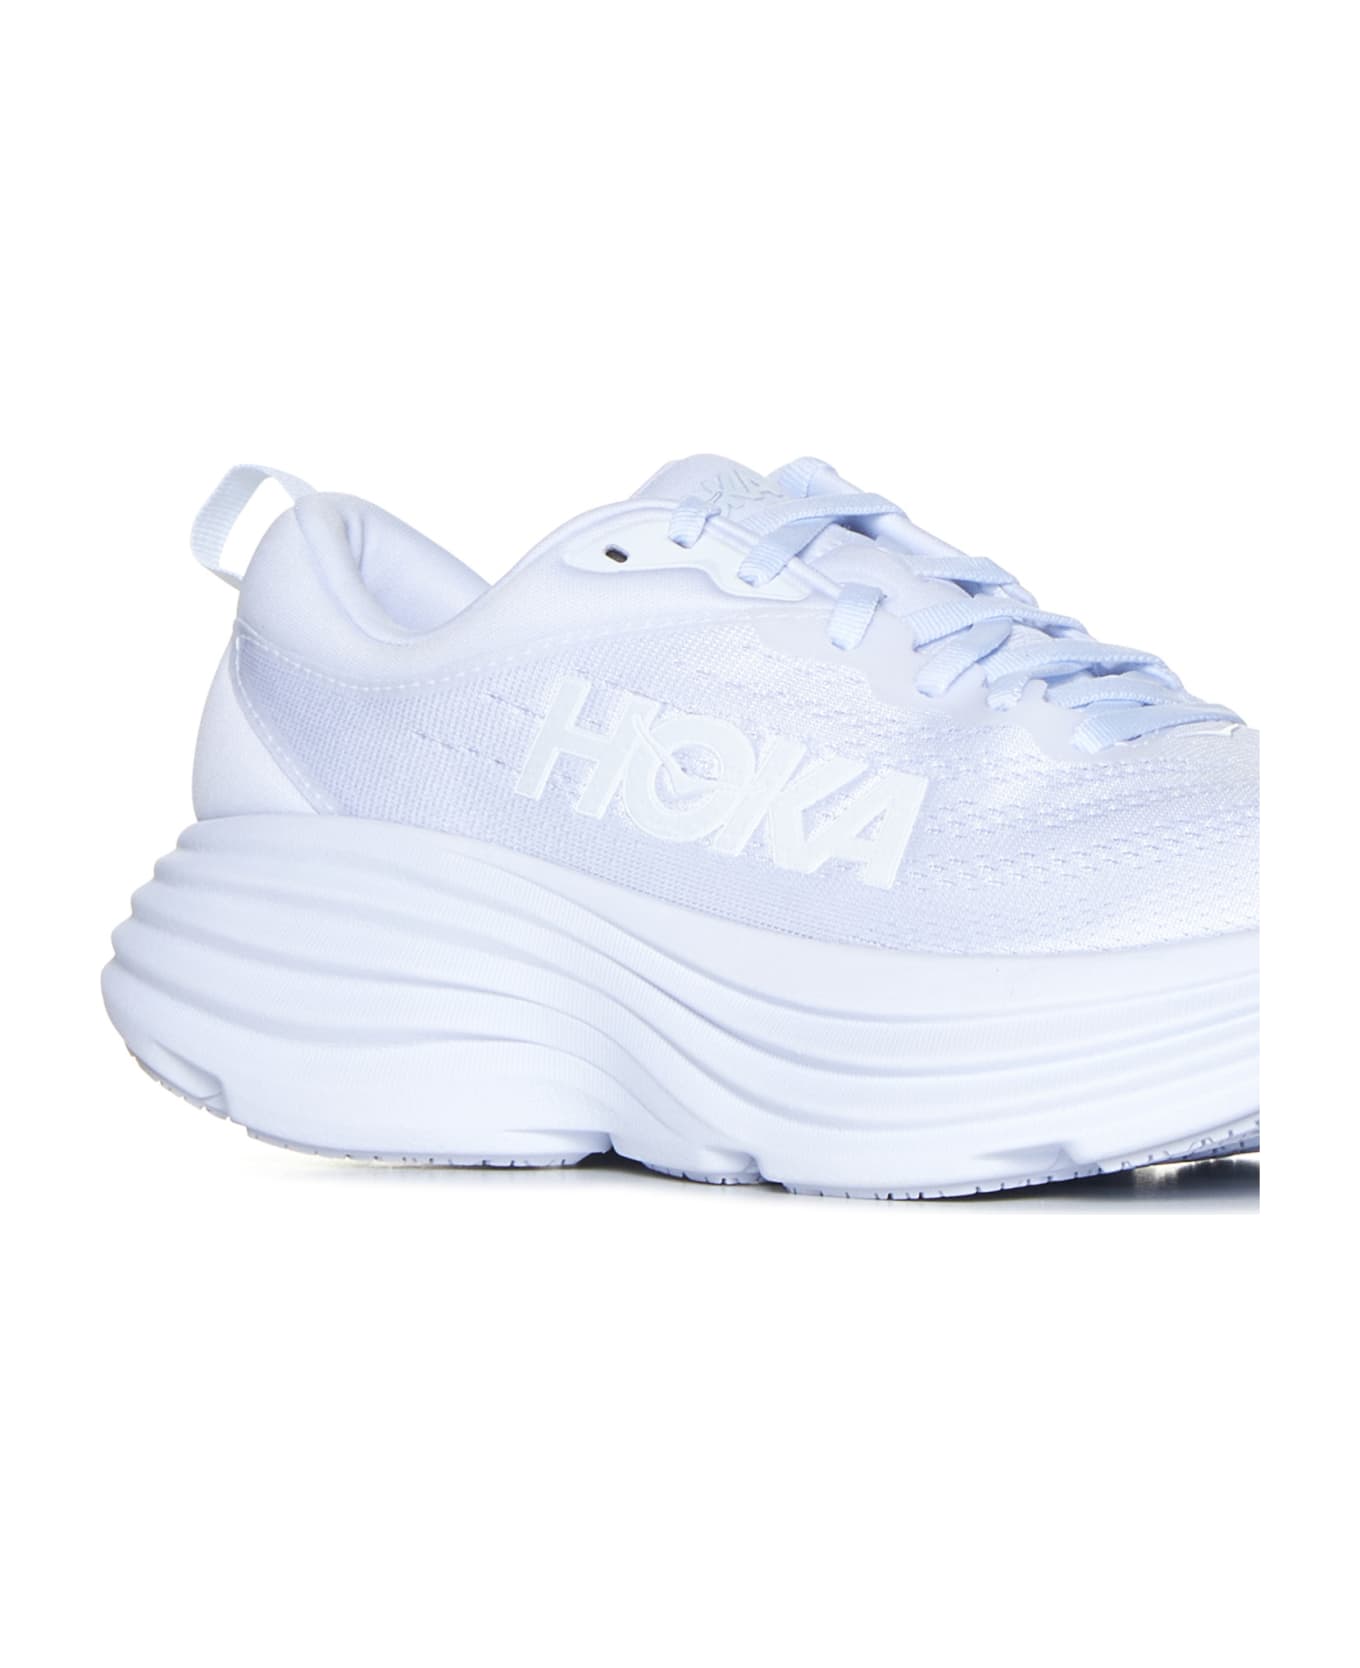 Hoka Sneakers - White